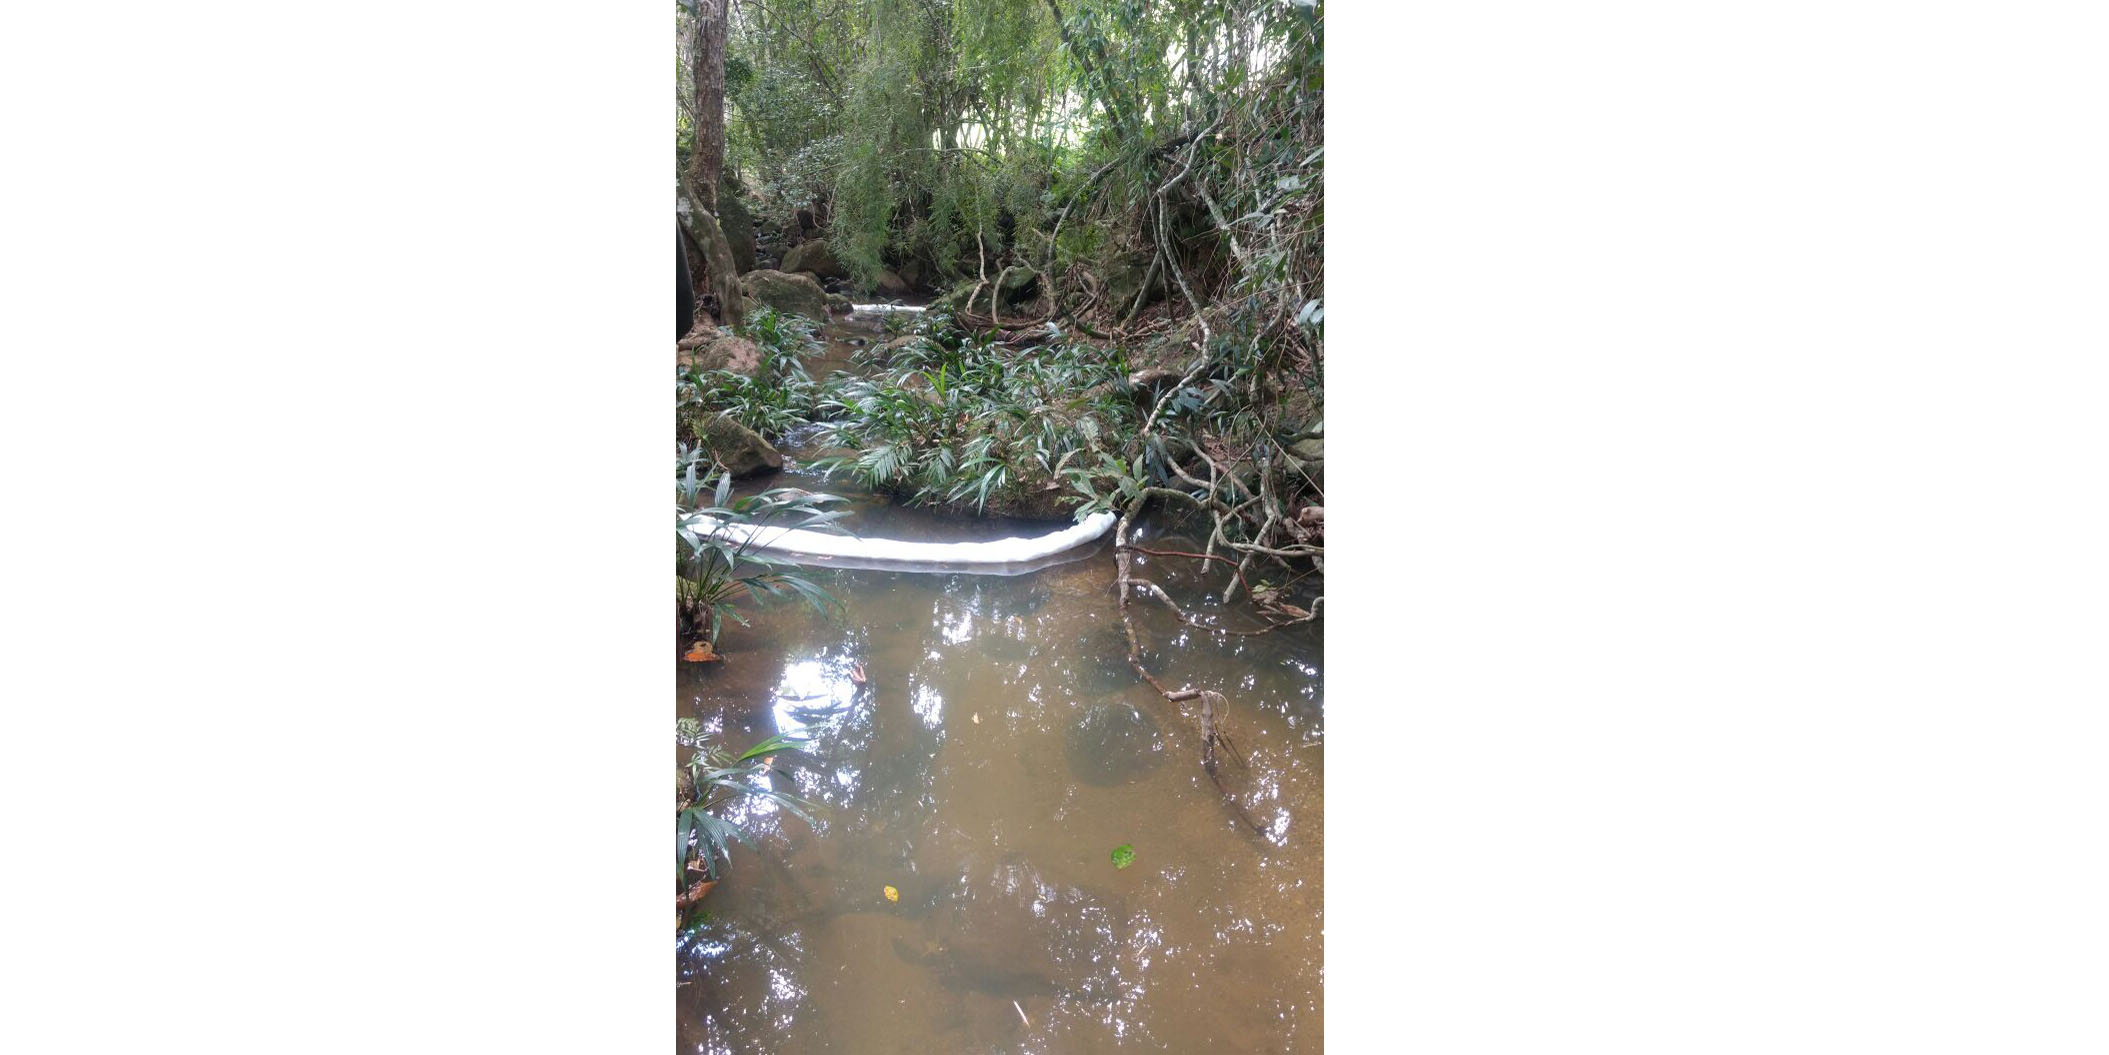 Resultados del Laboratorio de Salud Pública de Cundinamarca descarta contaminación por ácido nítrico en afluente en Guaduas



